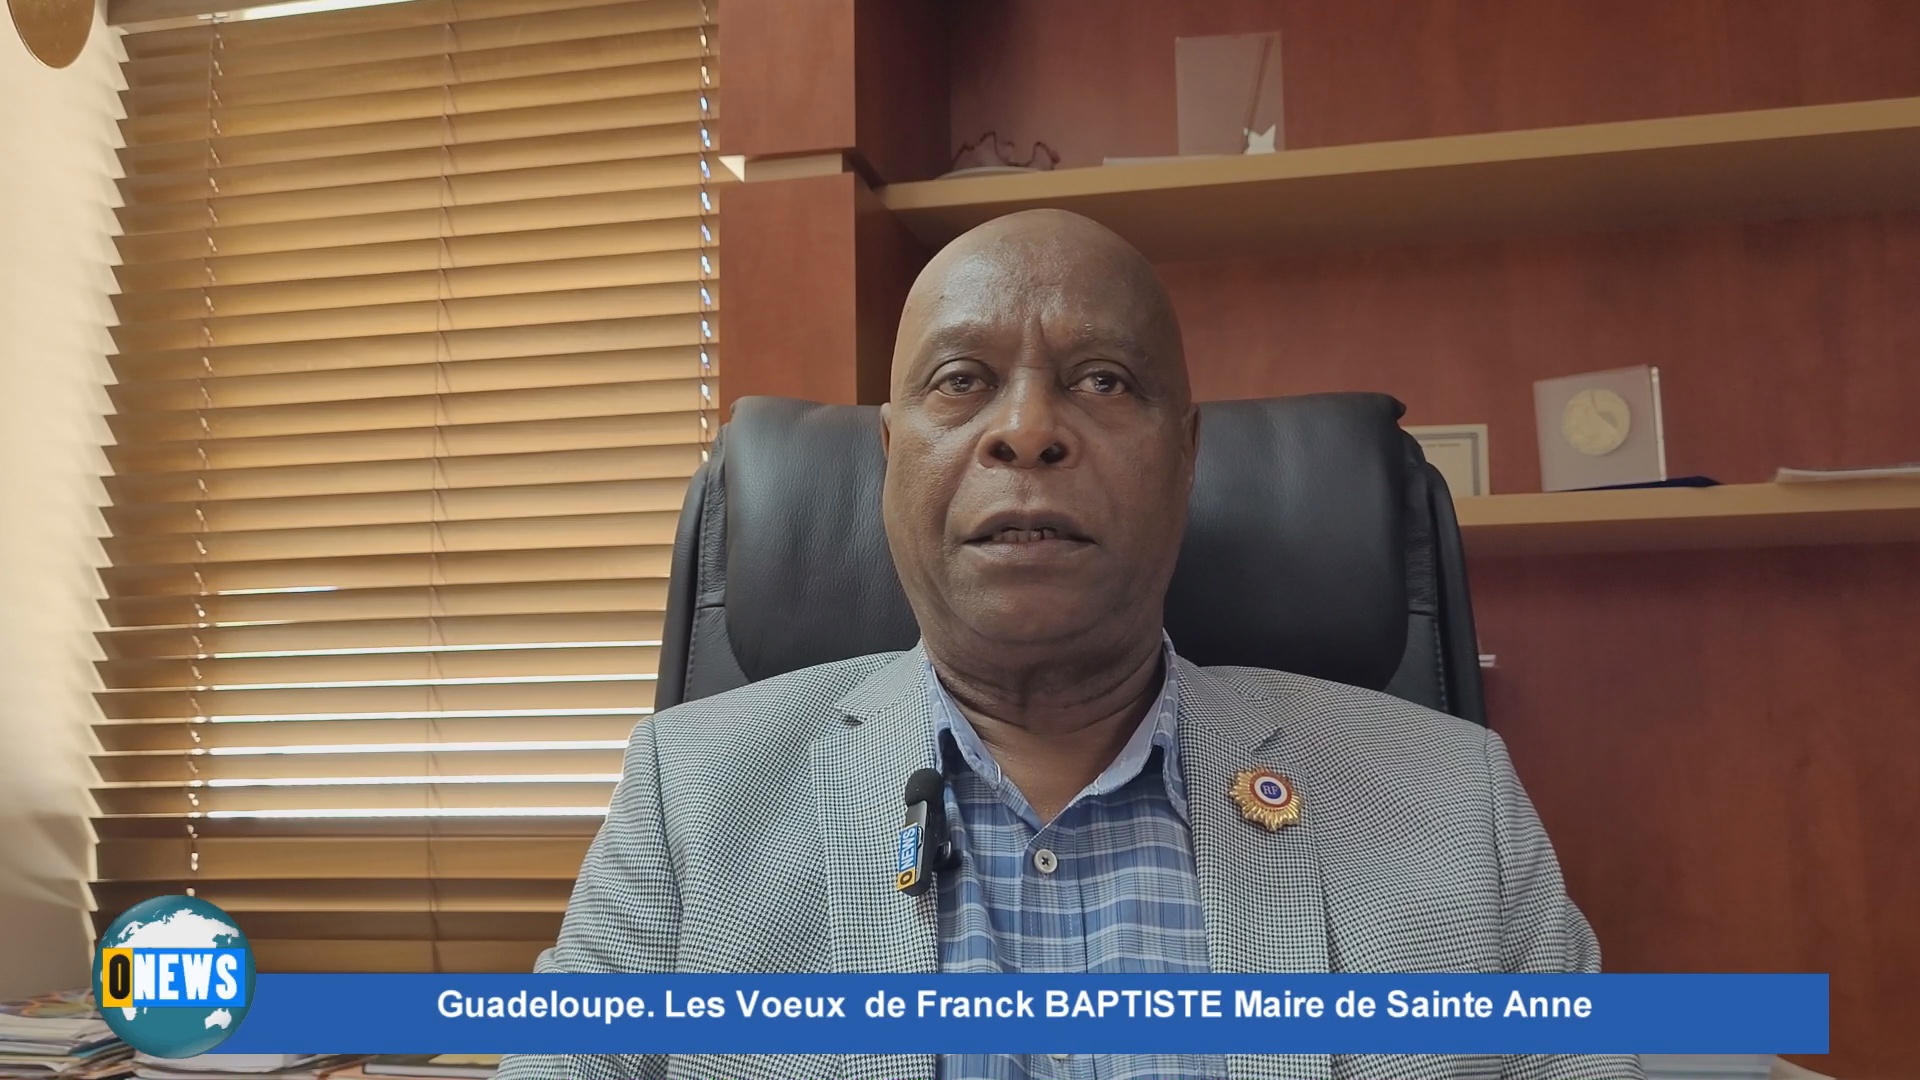 [Vidéo] Guadeloupe. Les voeux de Franck BAPTISTE Maire de Sainte Anne